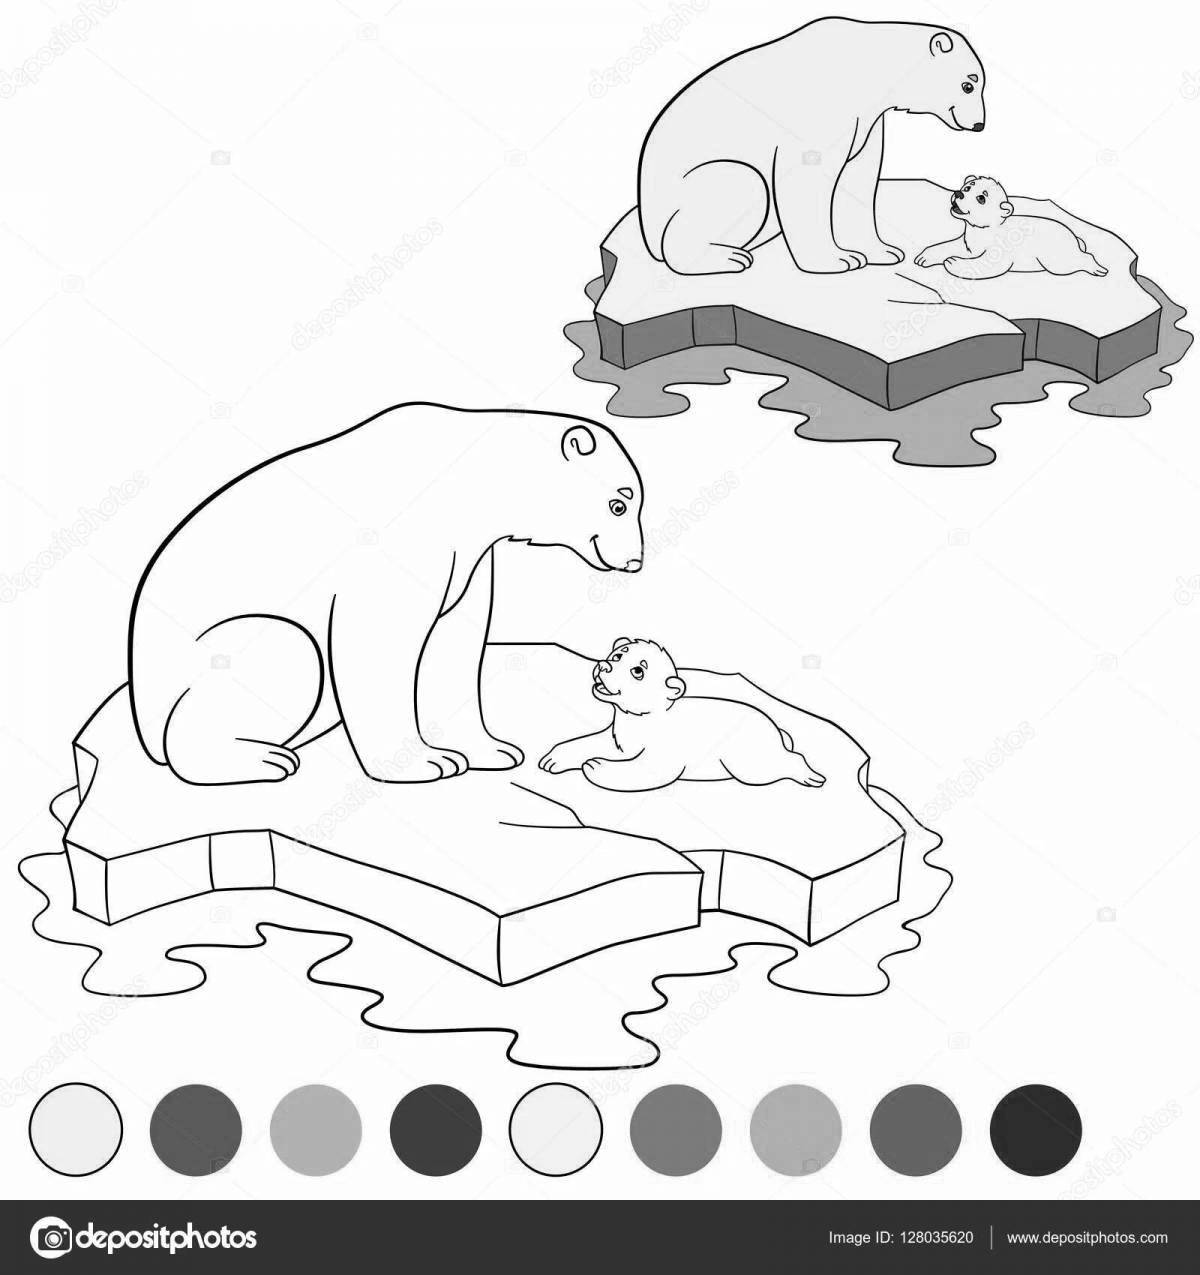 Adorable polar bear with a cub coloring book